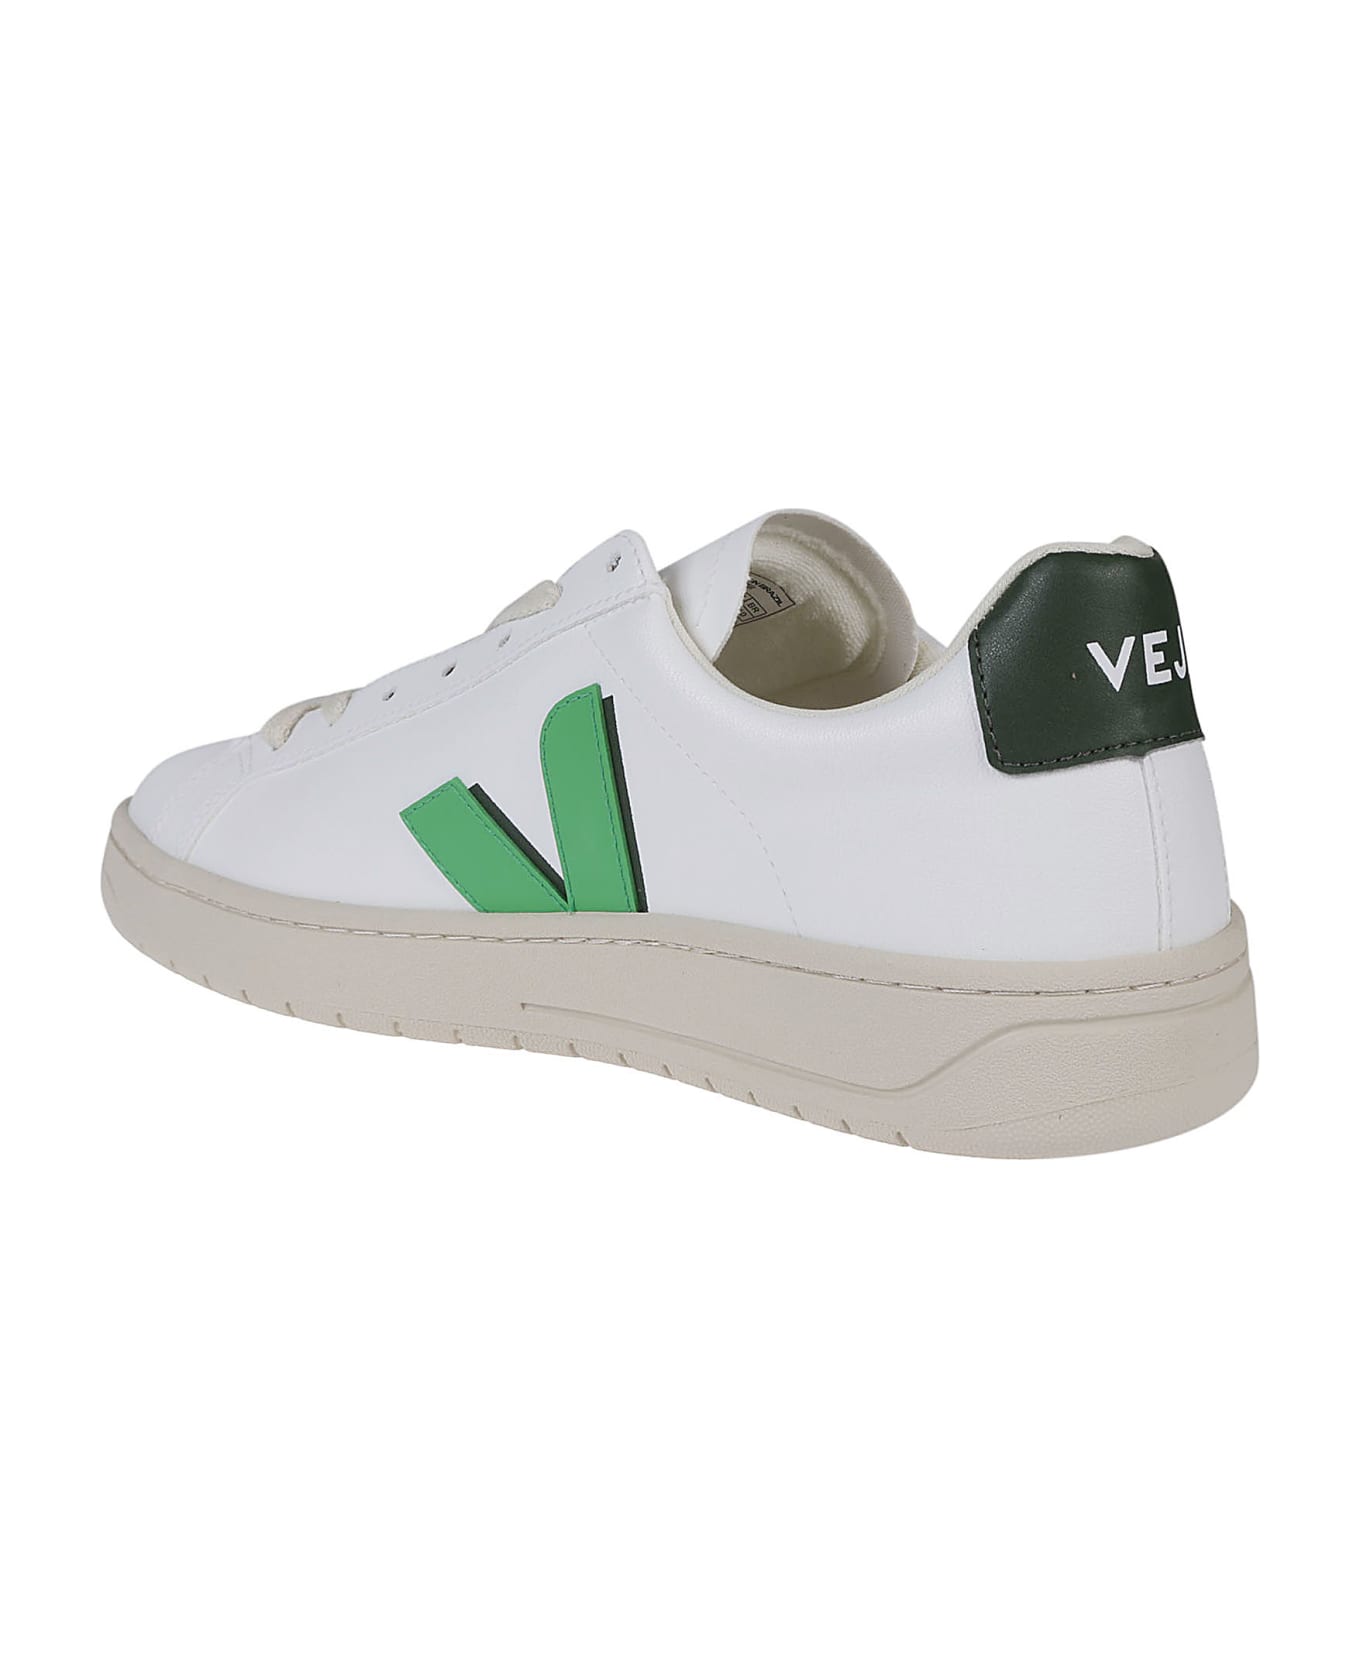 Veja Urca Sneakers - White/leaf/cyprus